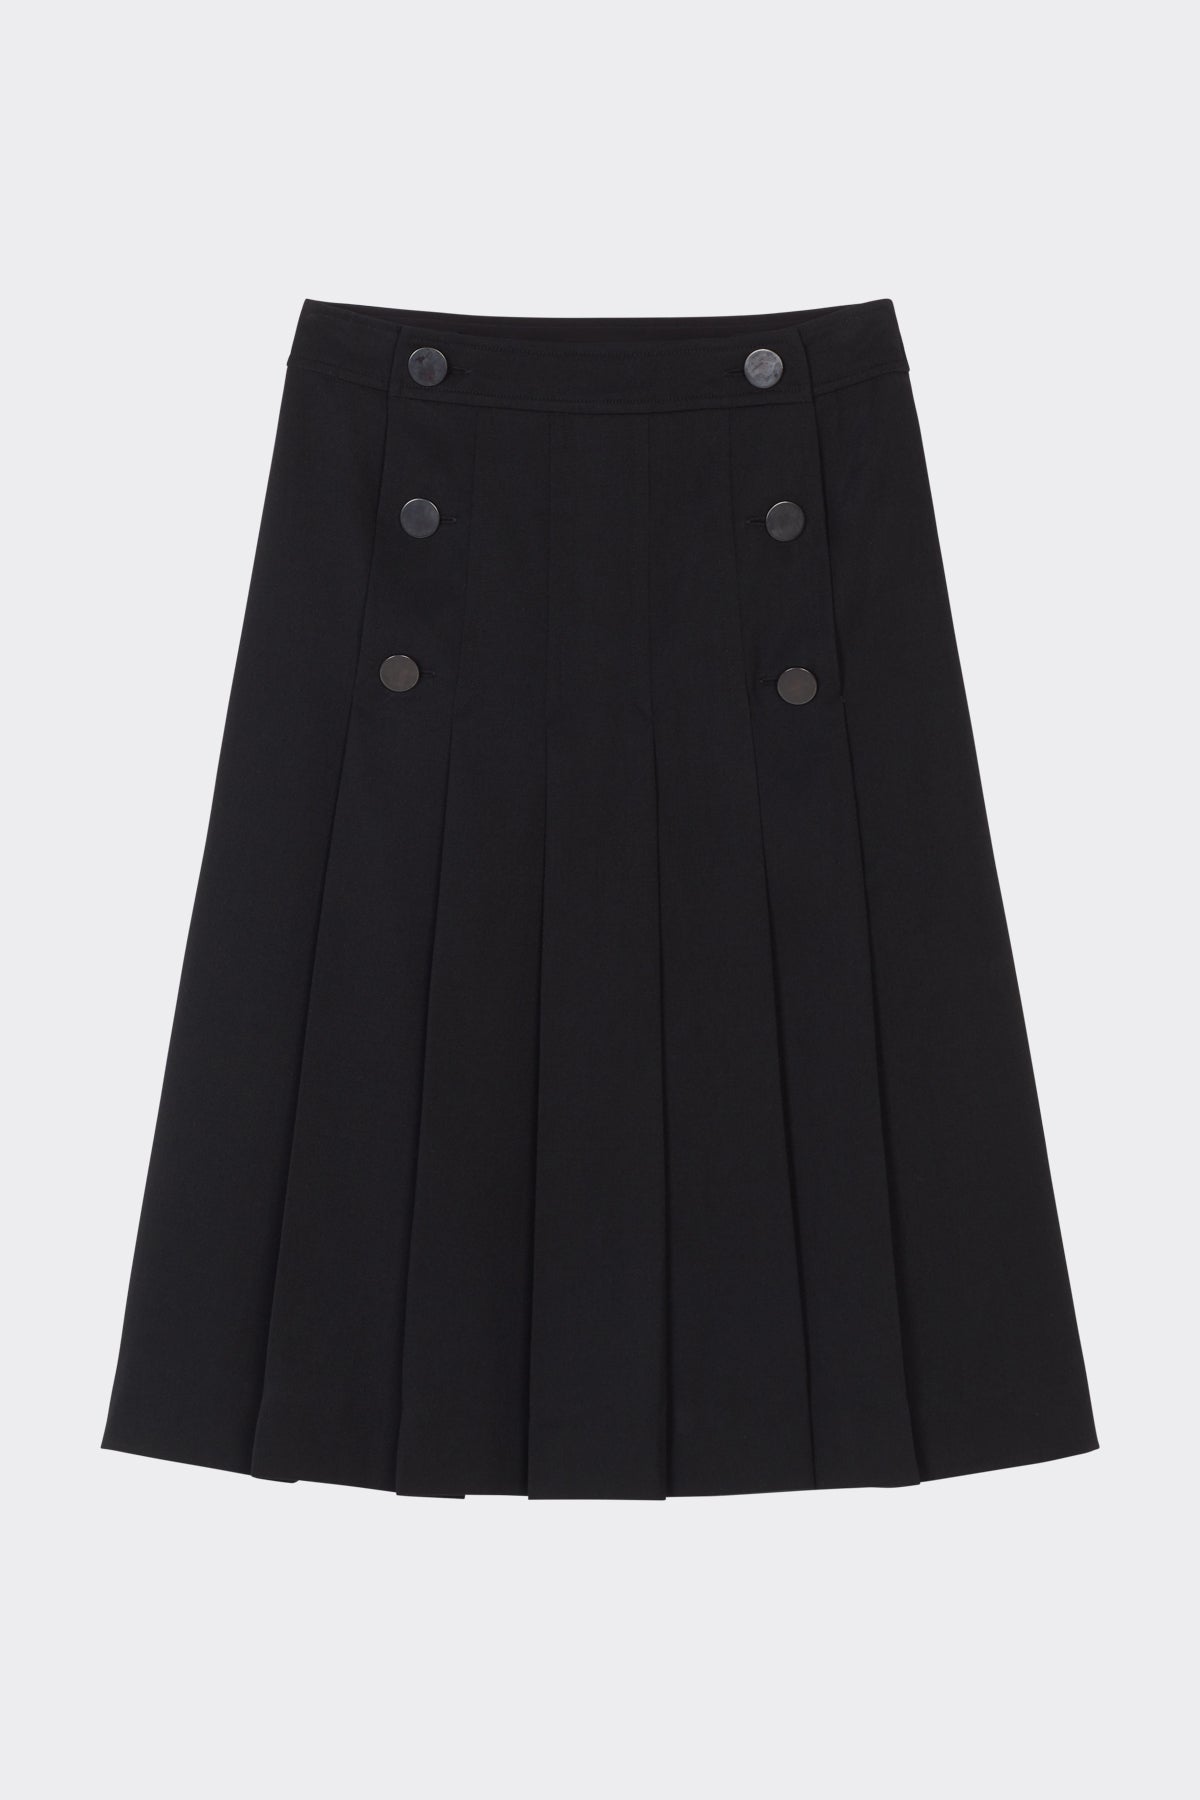 Cheri Skirt in Black| Noon by Noor